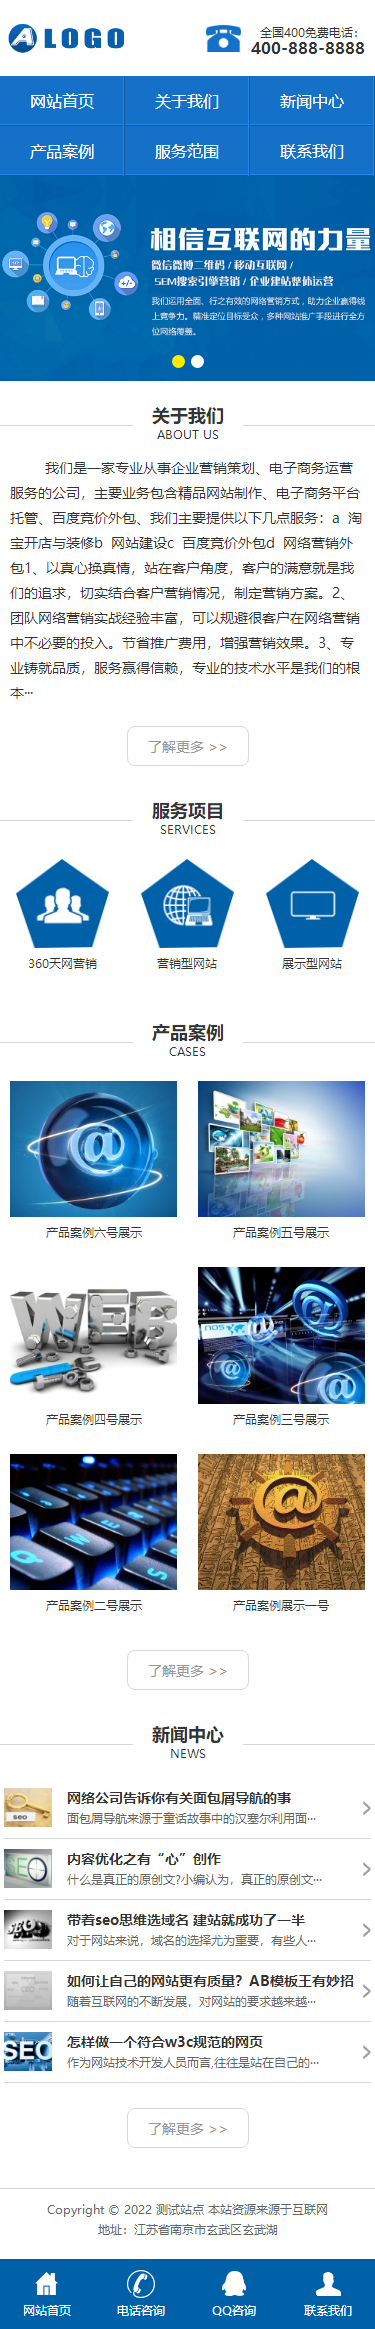 蓝色营销型网络公司手机网站模板(独立手机版) 通用企业网站源码